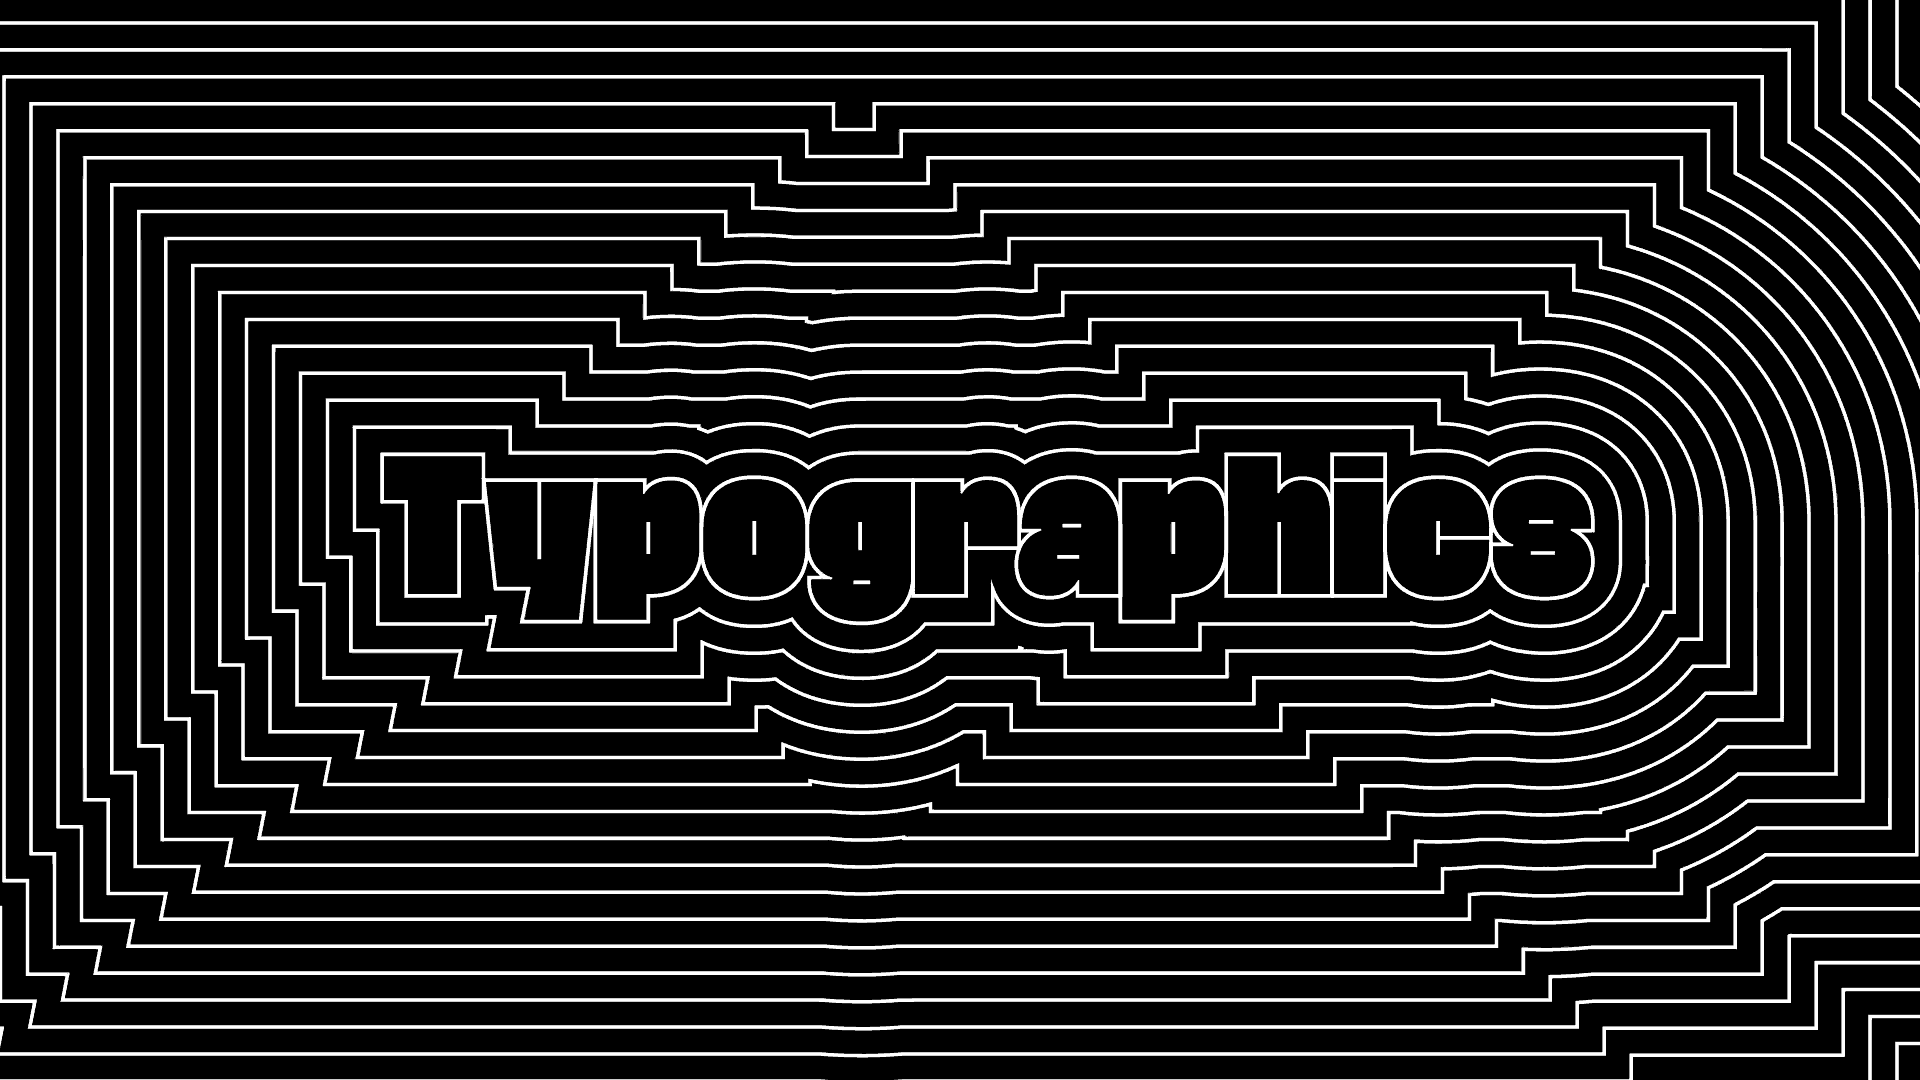 Typographics